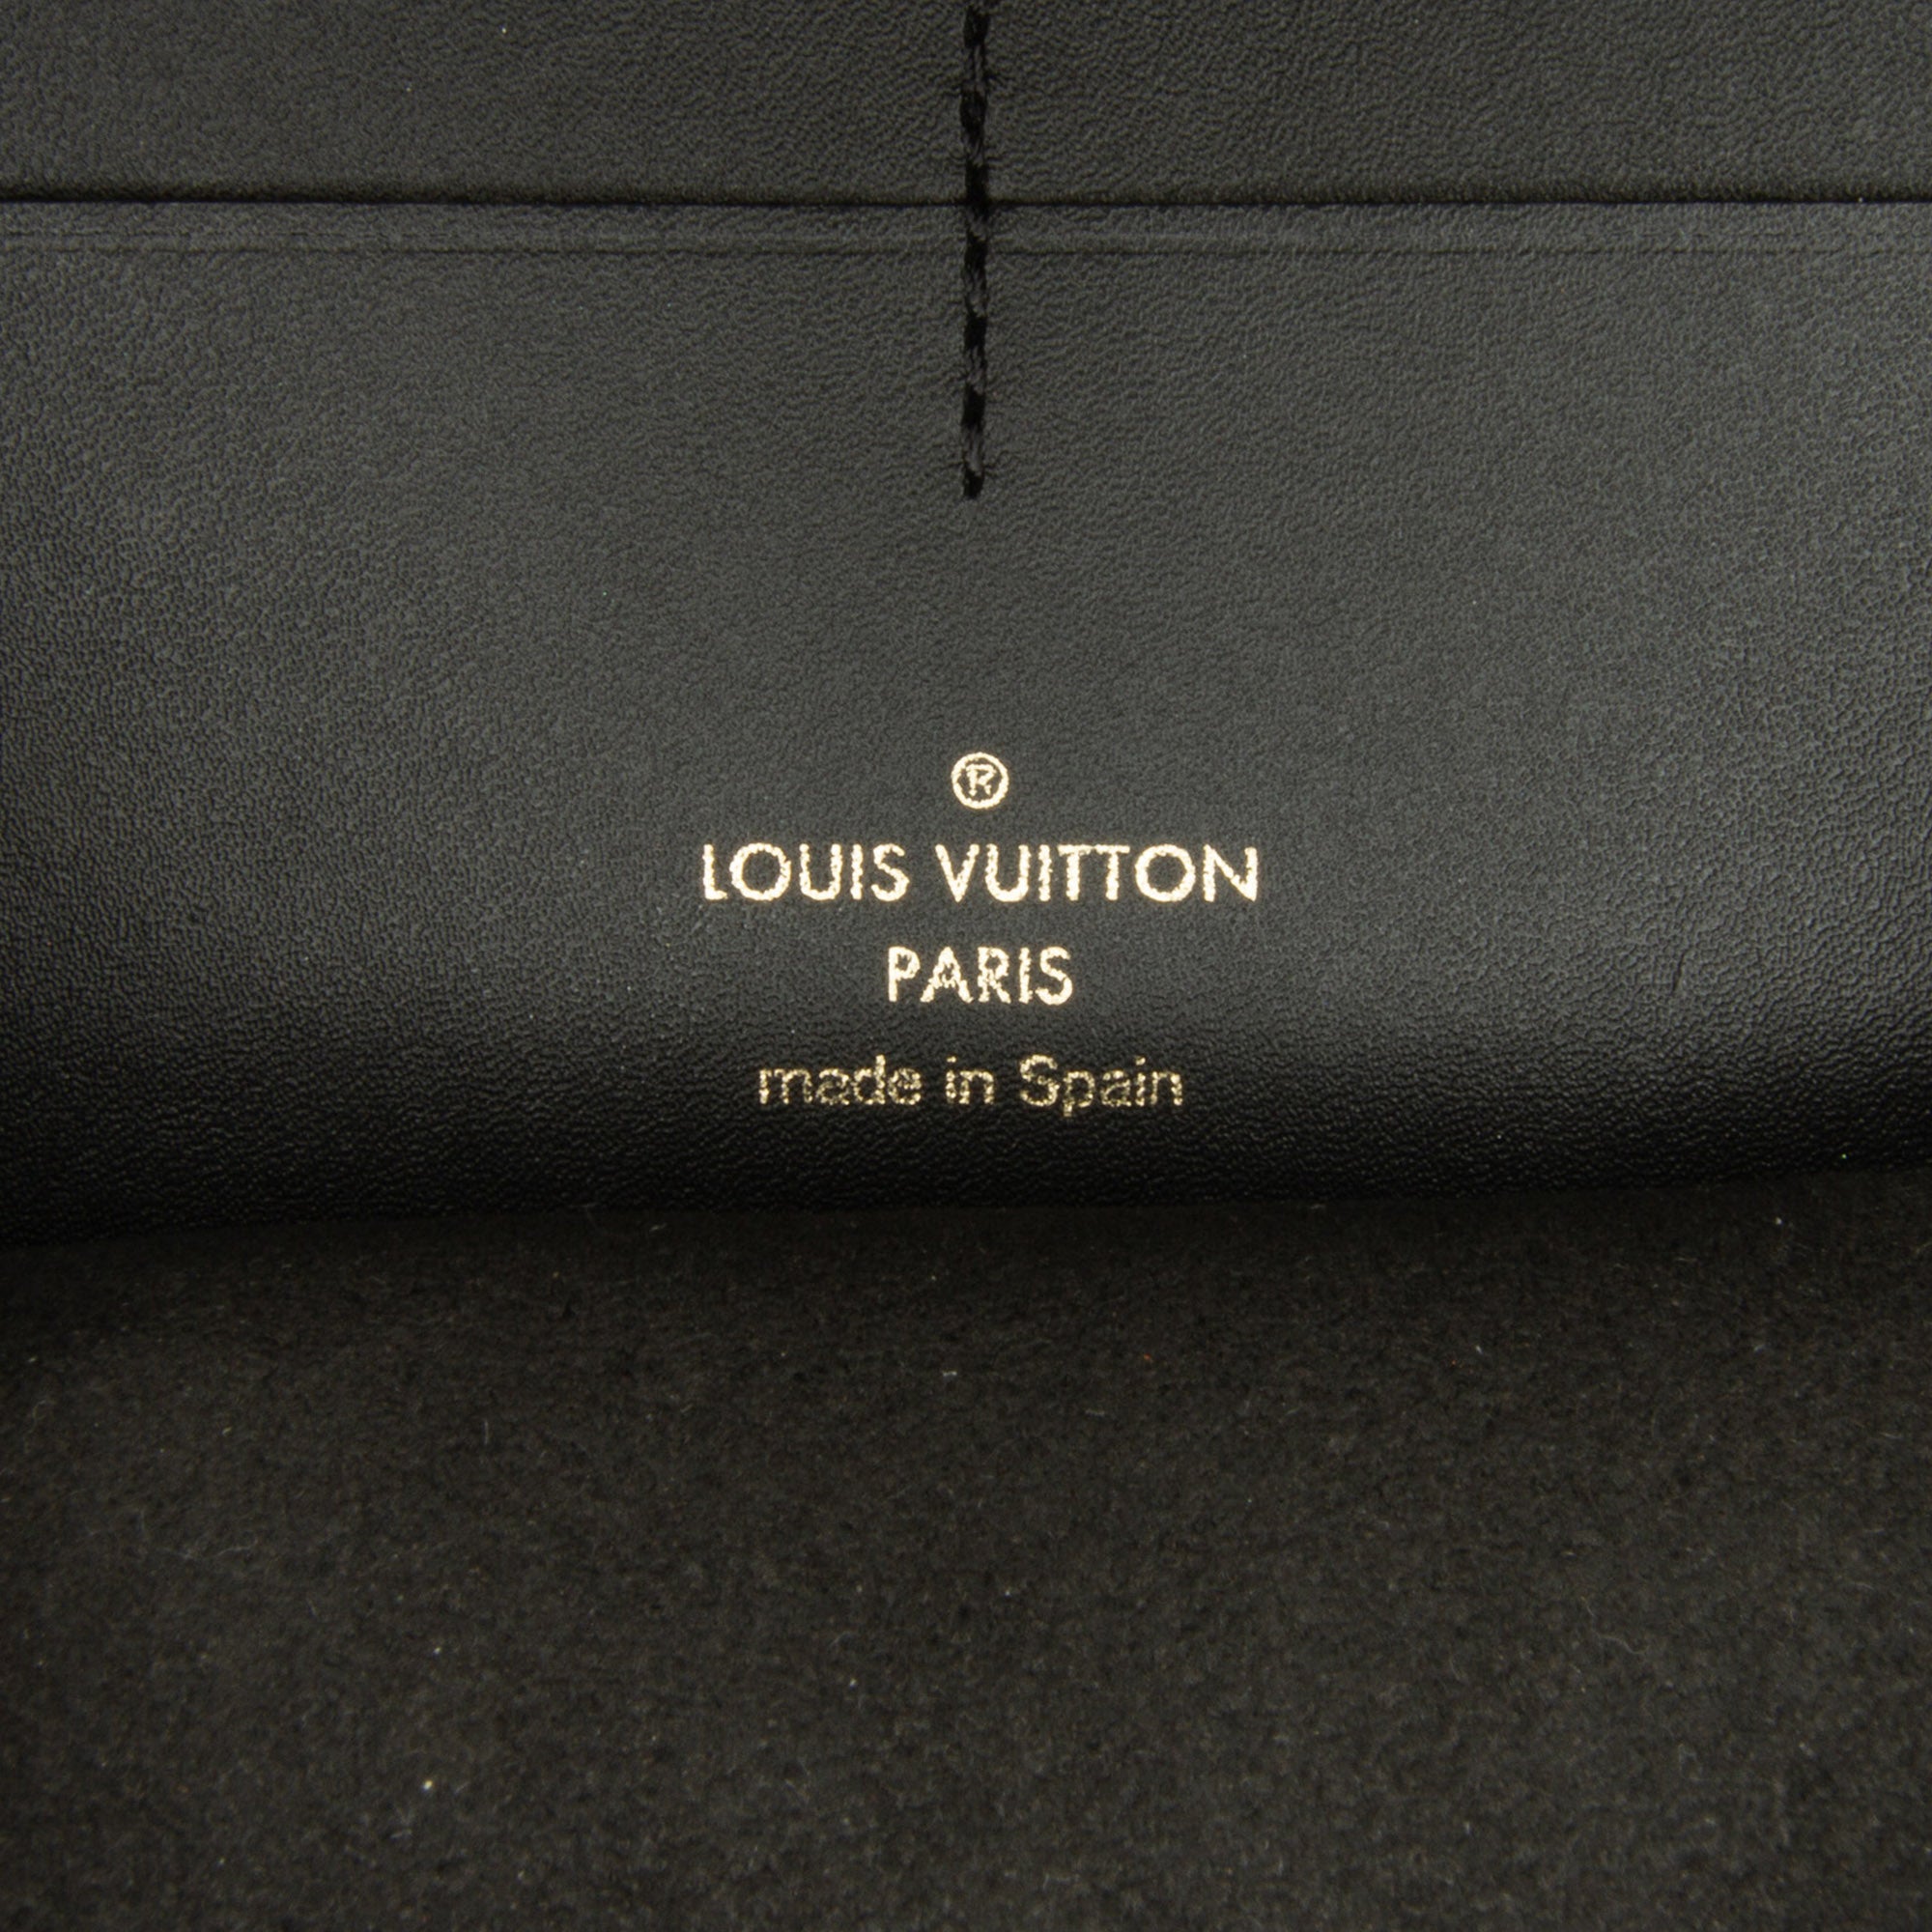 sneak peek of a new Louis Vuitton sneaker